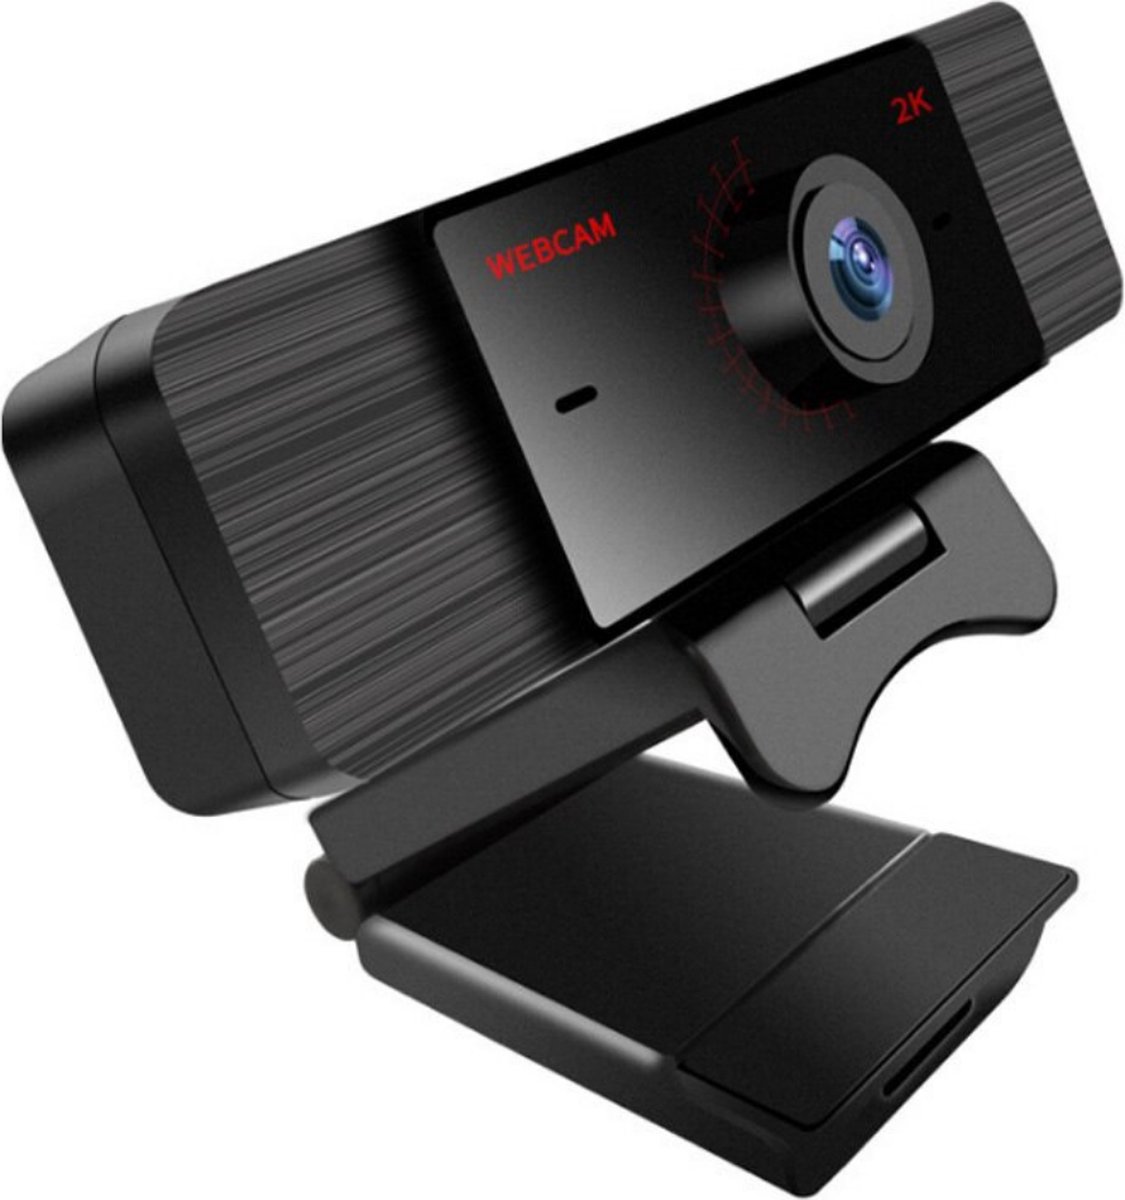 AspektProducts Webcam - Web Camera - Met Microfoon - Voor Computer - 360 graden rotatie - Zwart